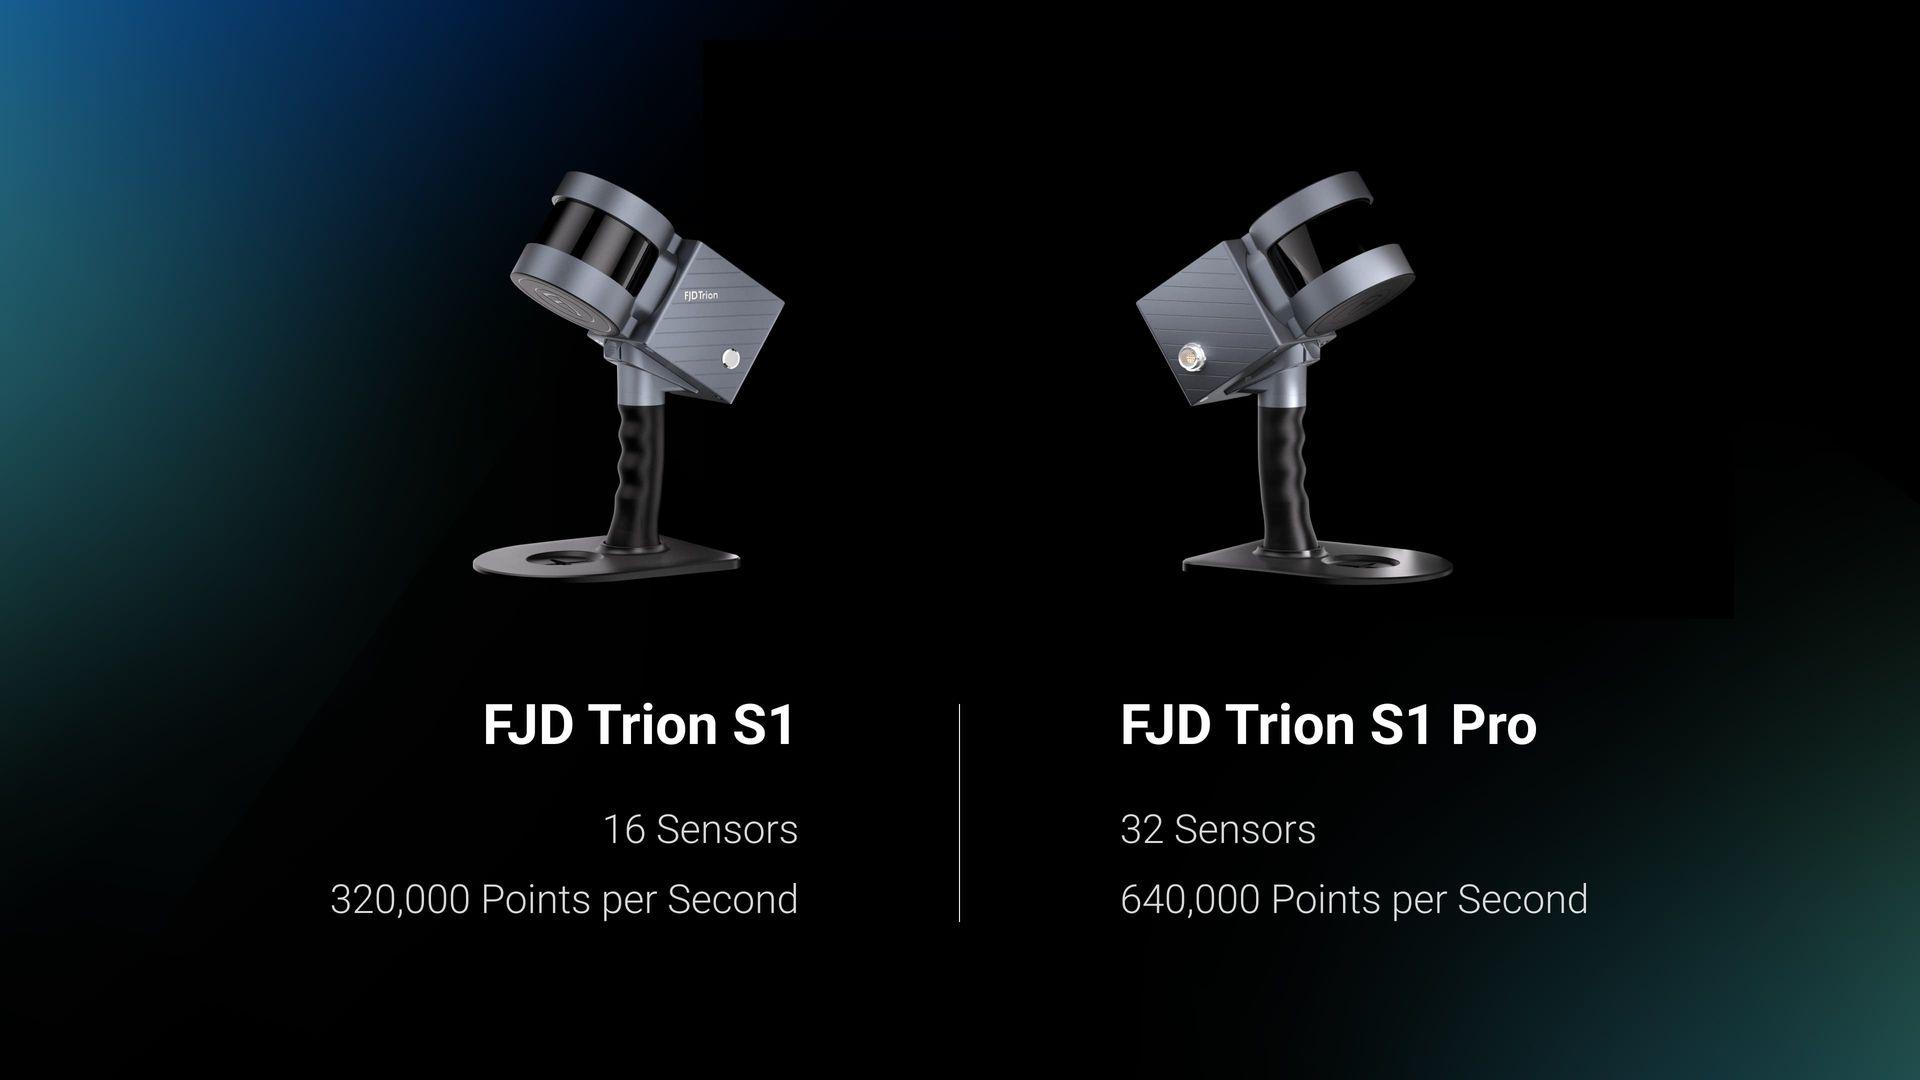 Növelje szkennelési képességeit az FJD Trion S1 Pro segítségével, az S1 fejlett verziójával. Az S1 könnyű és hordozható kialakítására építve az S1 Pro még nagyobb pontosságot és hatékonyságot biztosít továbbfejlesztett hardverével.